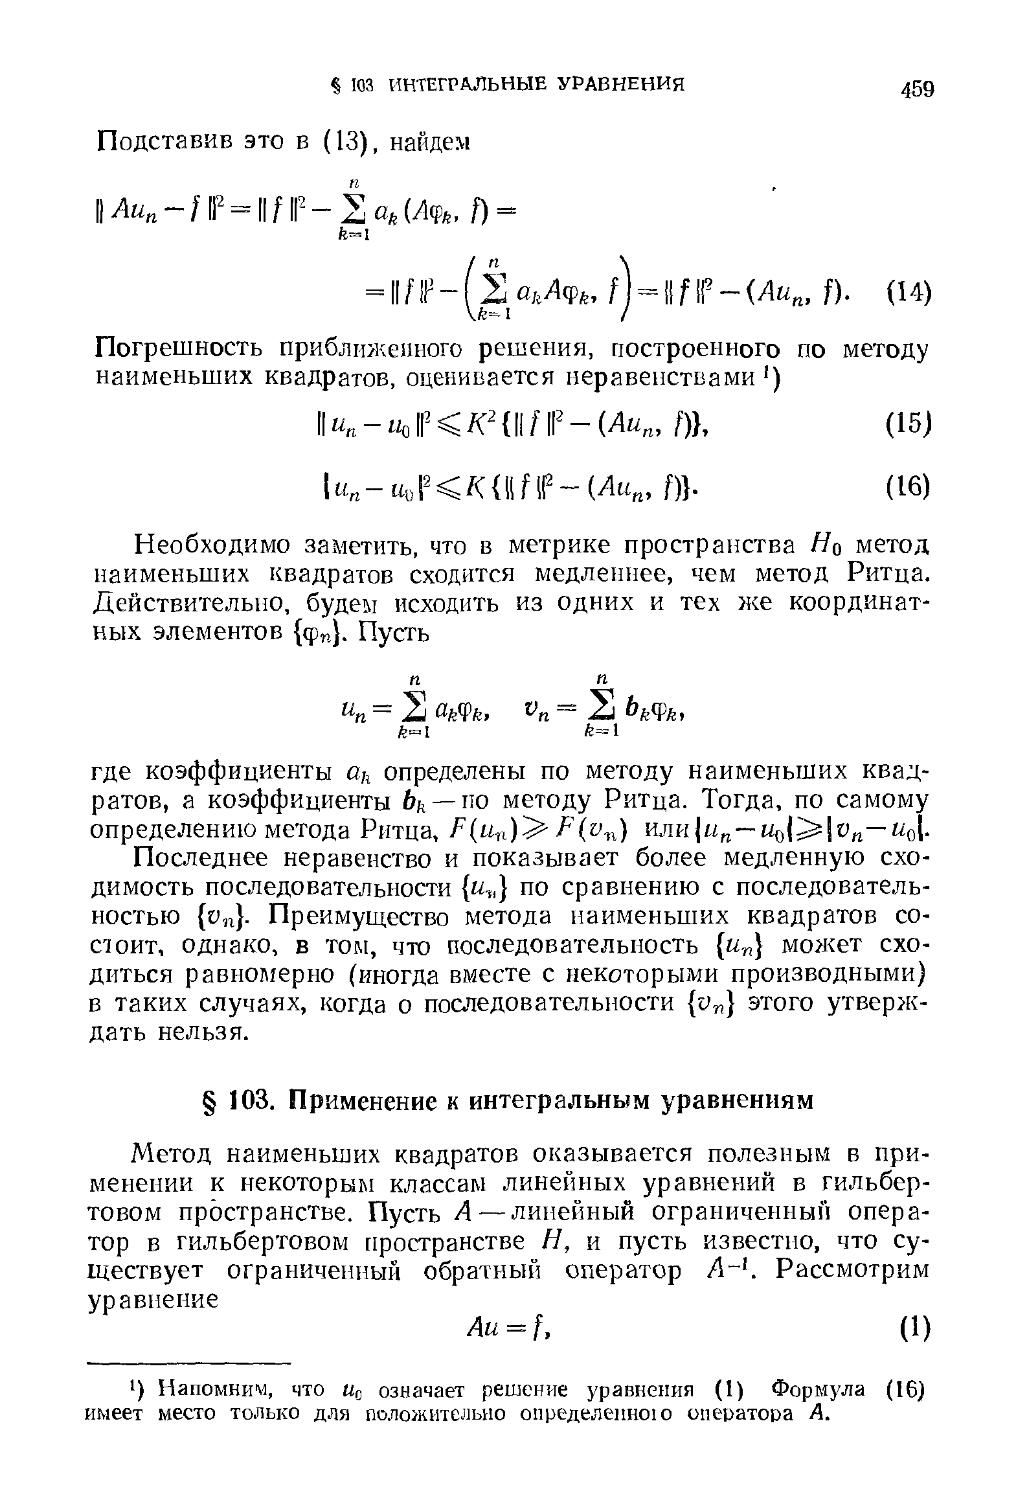 § 103. Применение к интегральным уравнениям